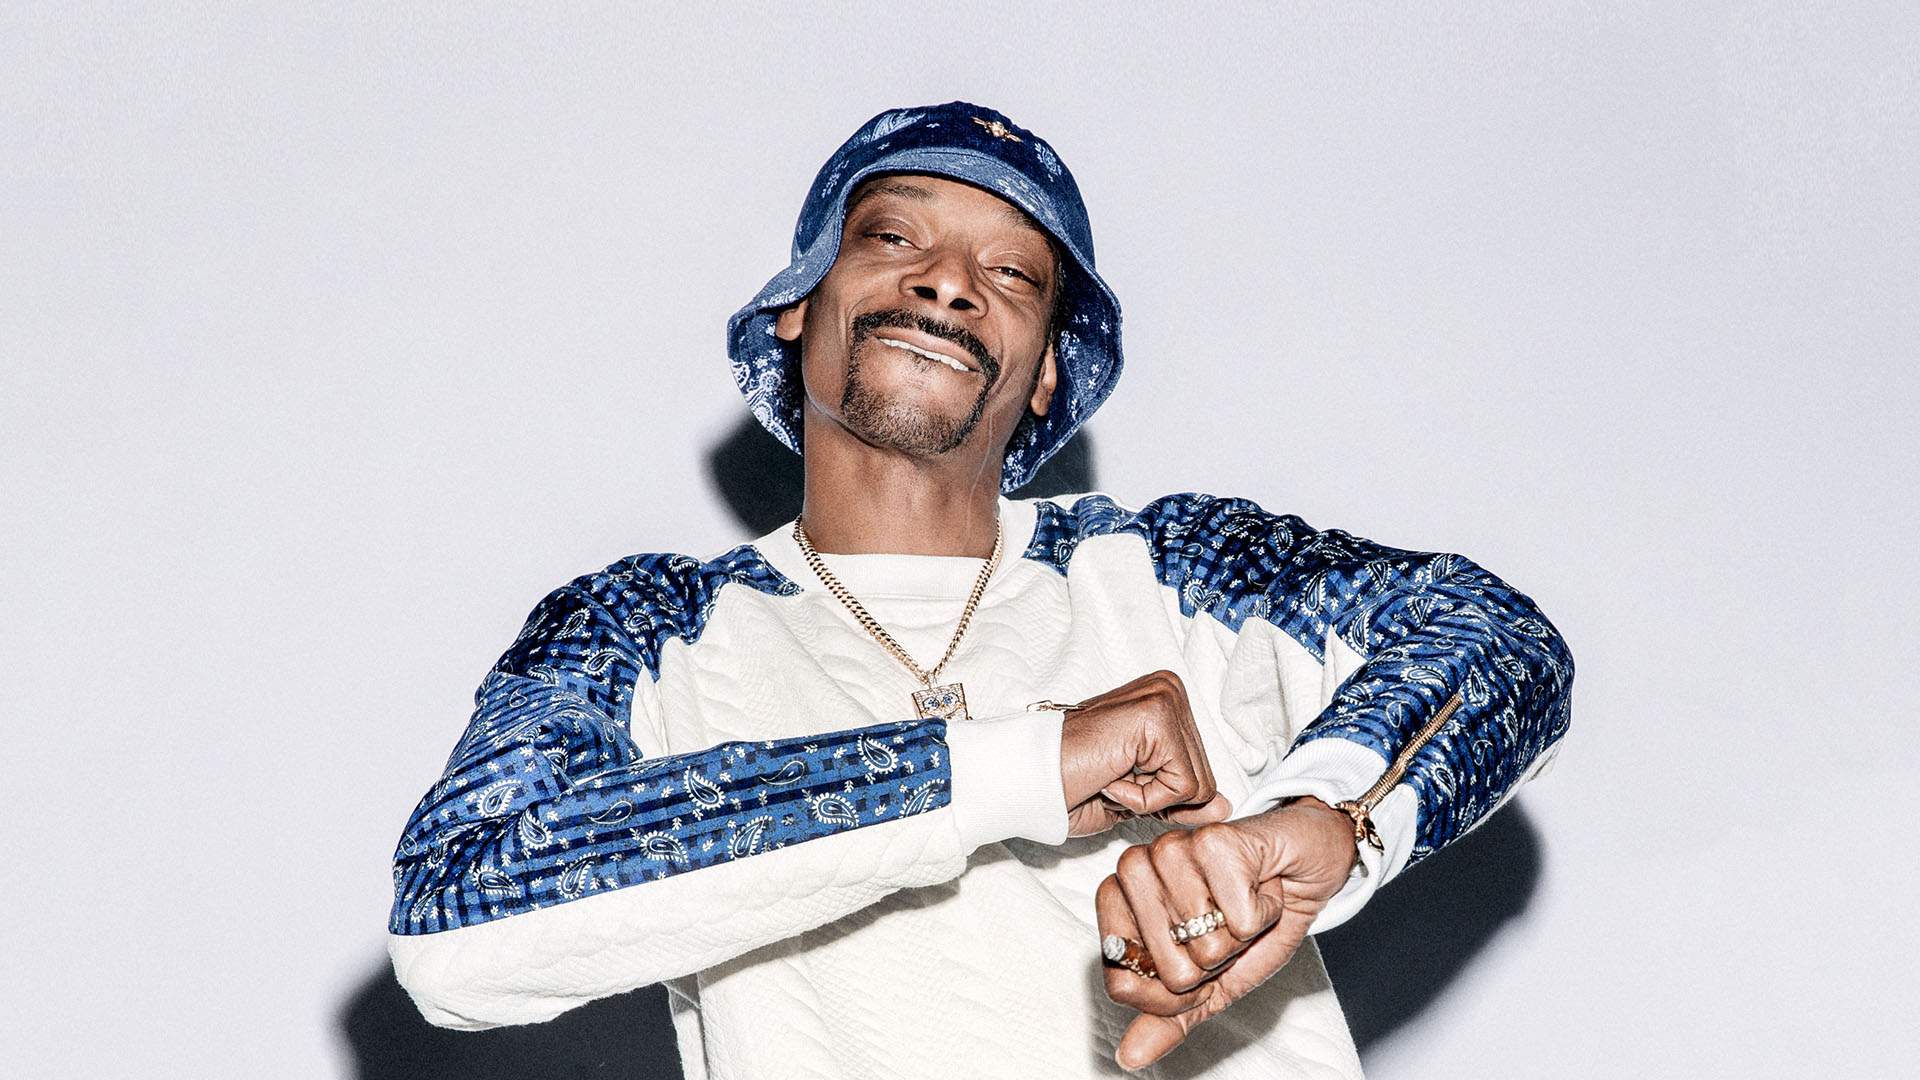 Snoop Dogg: "I Wanna Thank Me" Tour